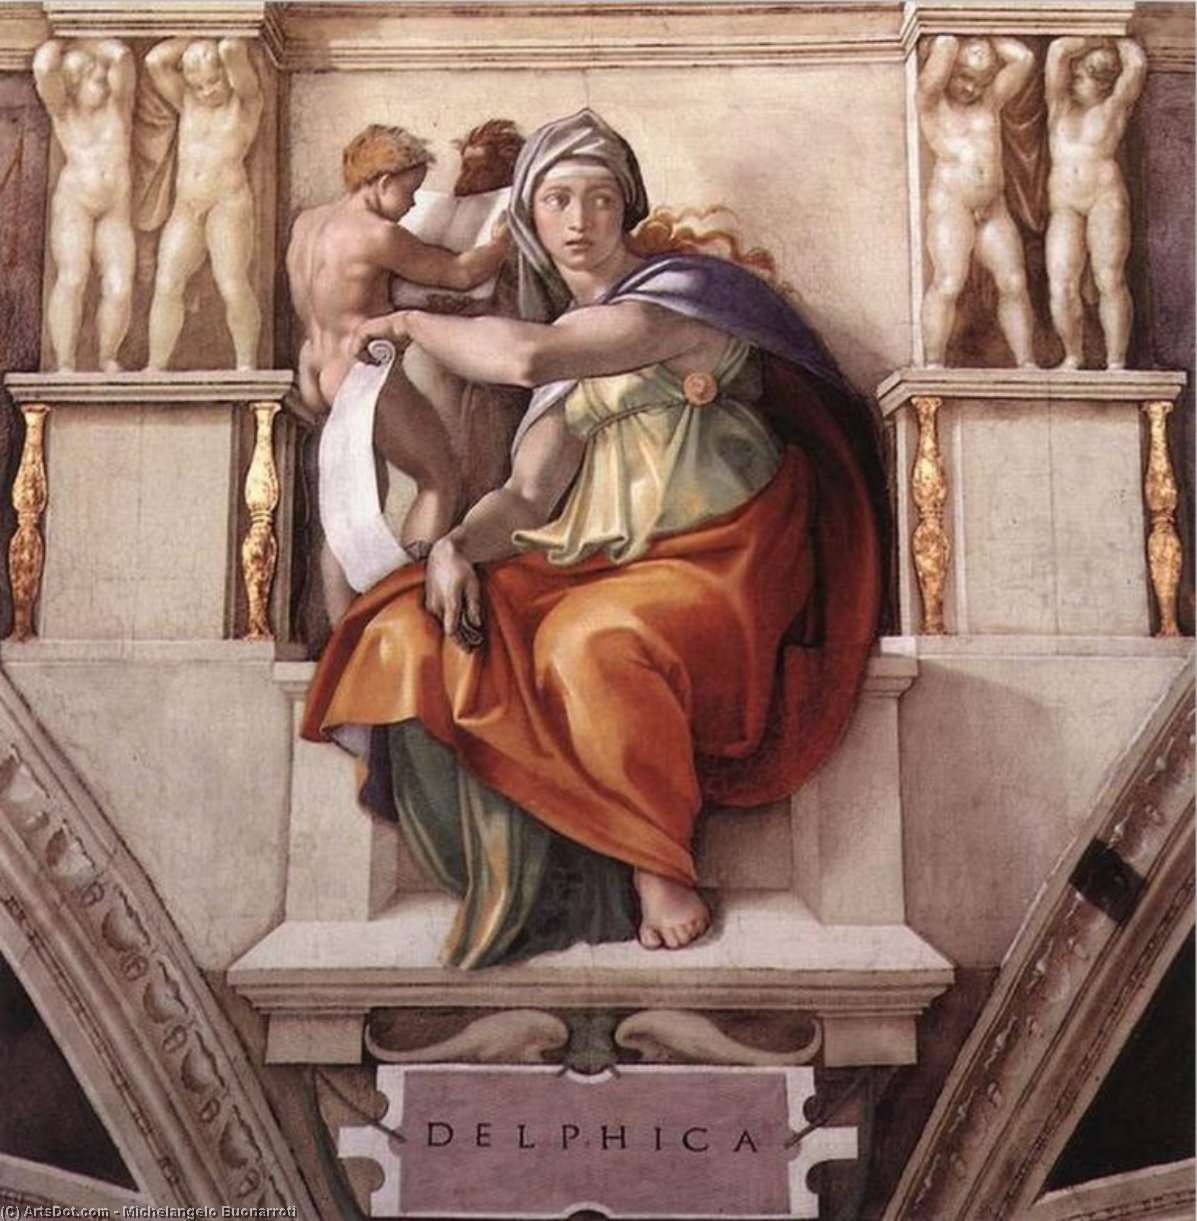 WikiOO.org - Encyclopedia of Fine Arts - Lukisan, Artwork Michelangelo Buonarroti - The Sibyl of Delphi